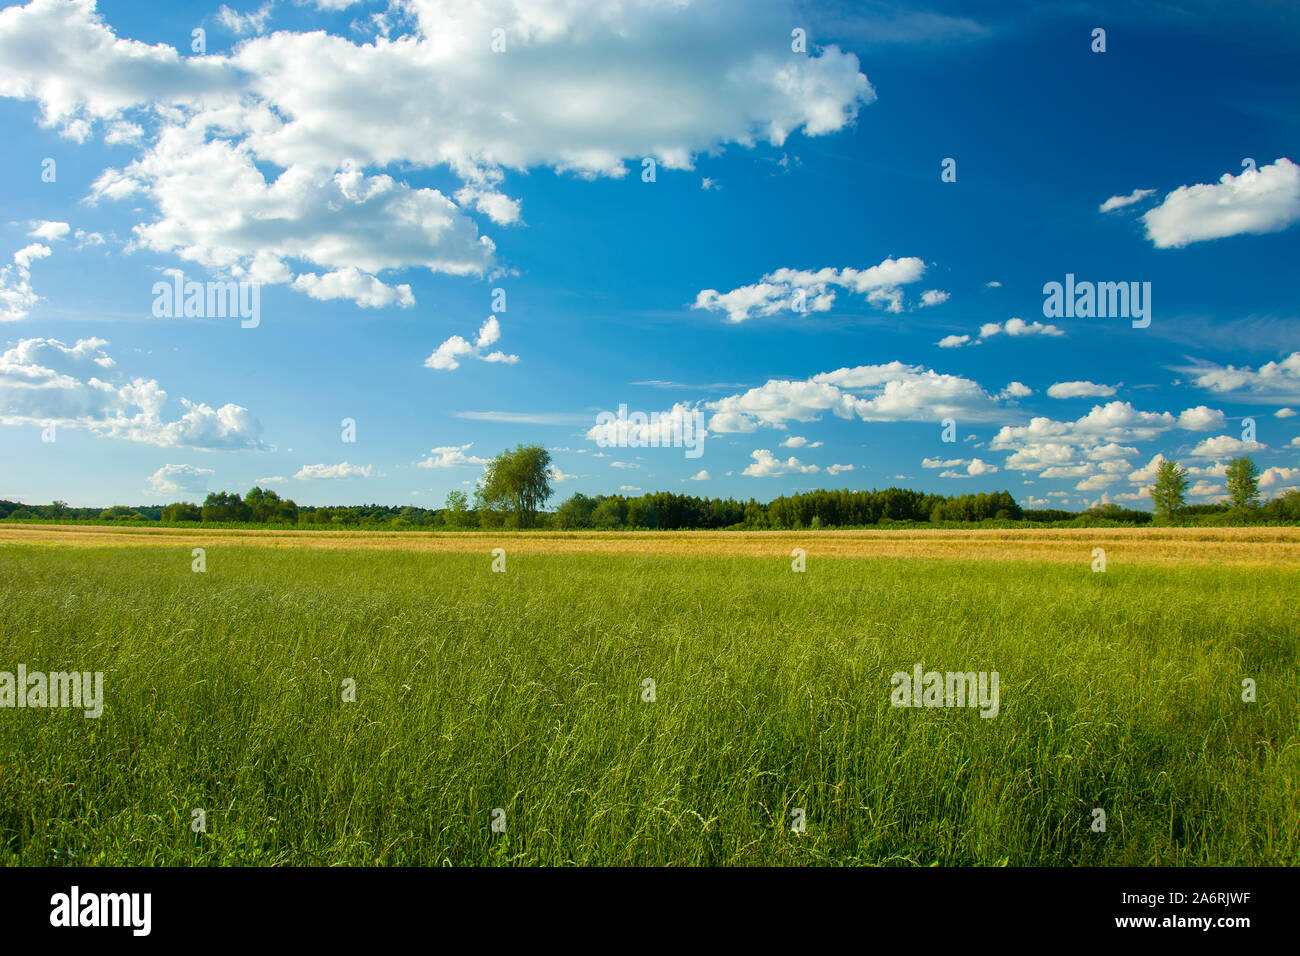 La pasto verde en la pradera, el horizonte y las nubes blancas en el cielo azul, la zona oriental de Polonia Foto de stock